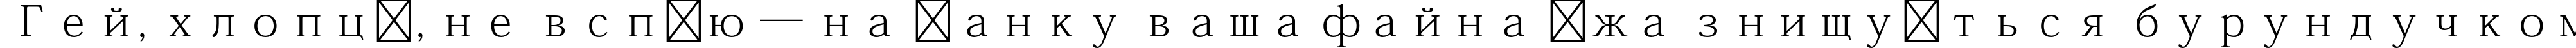 Пример написания шрифтом Adobe Fangsong Std R текста на украинском